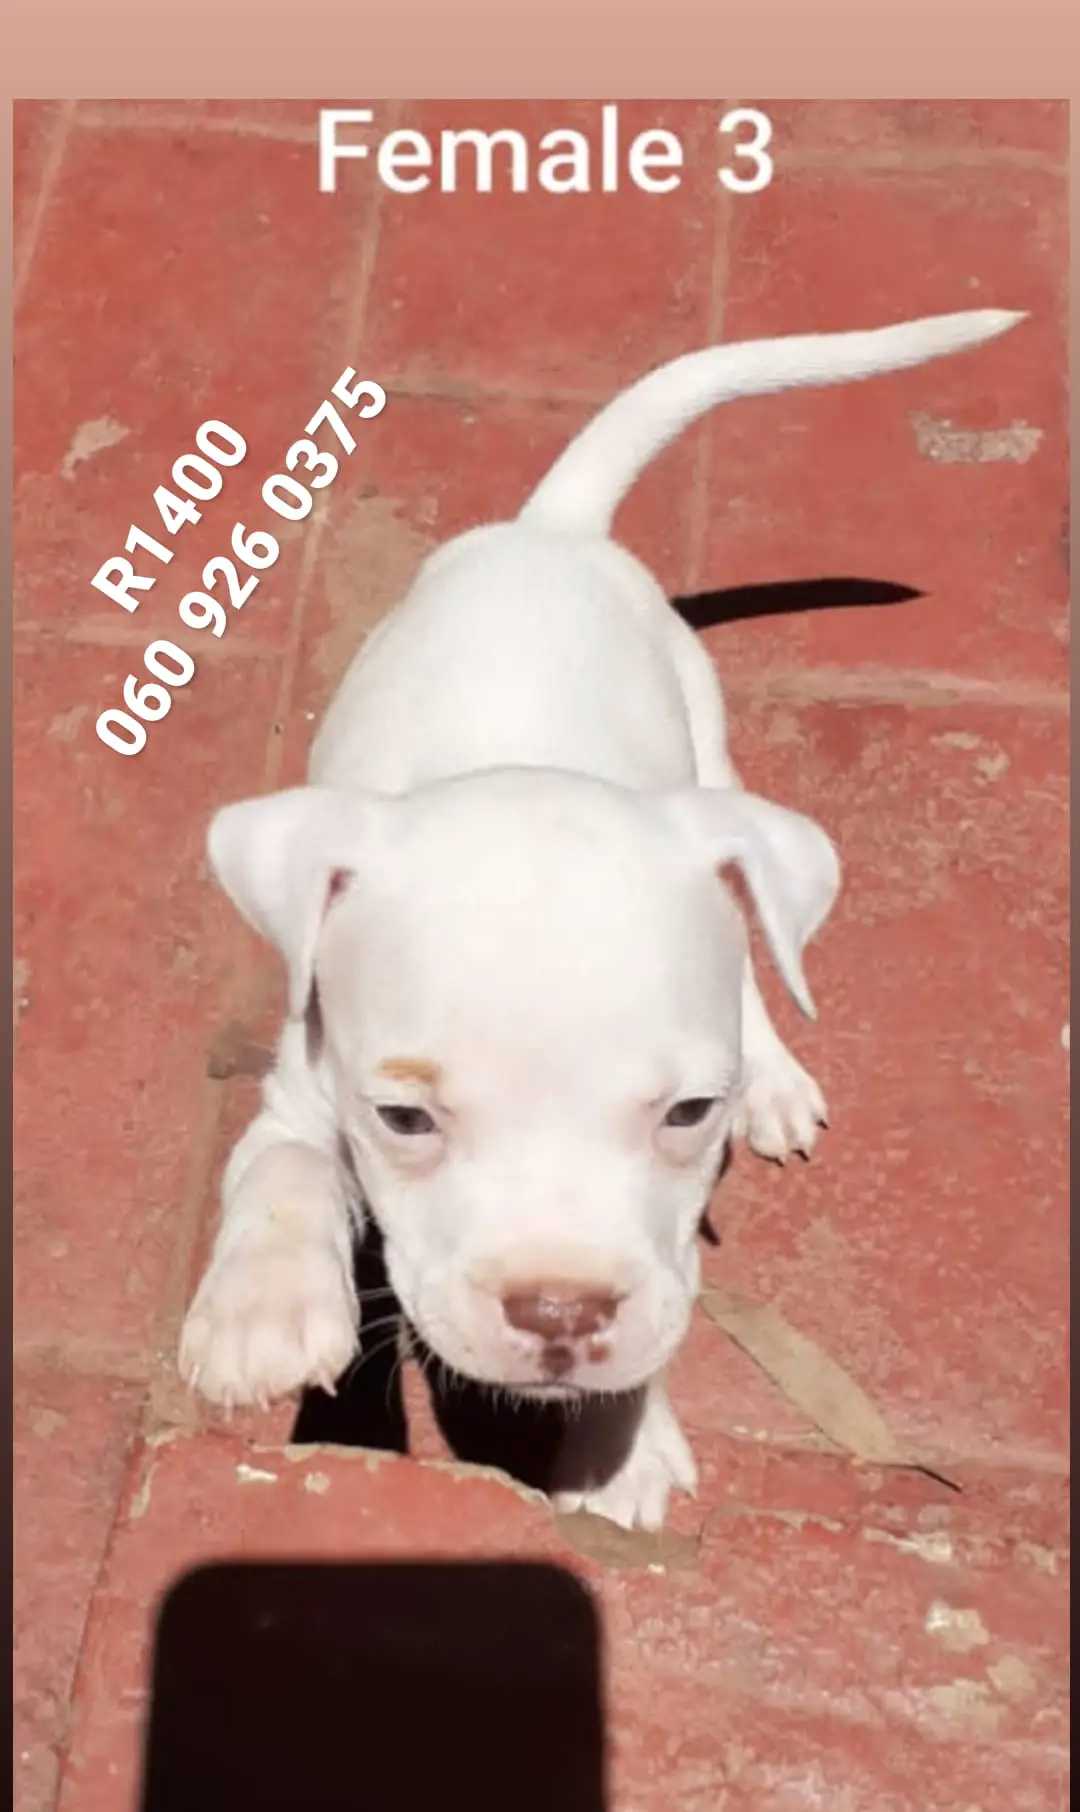 Pitbull Puppies in Pretoria (15/01/2021)